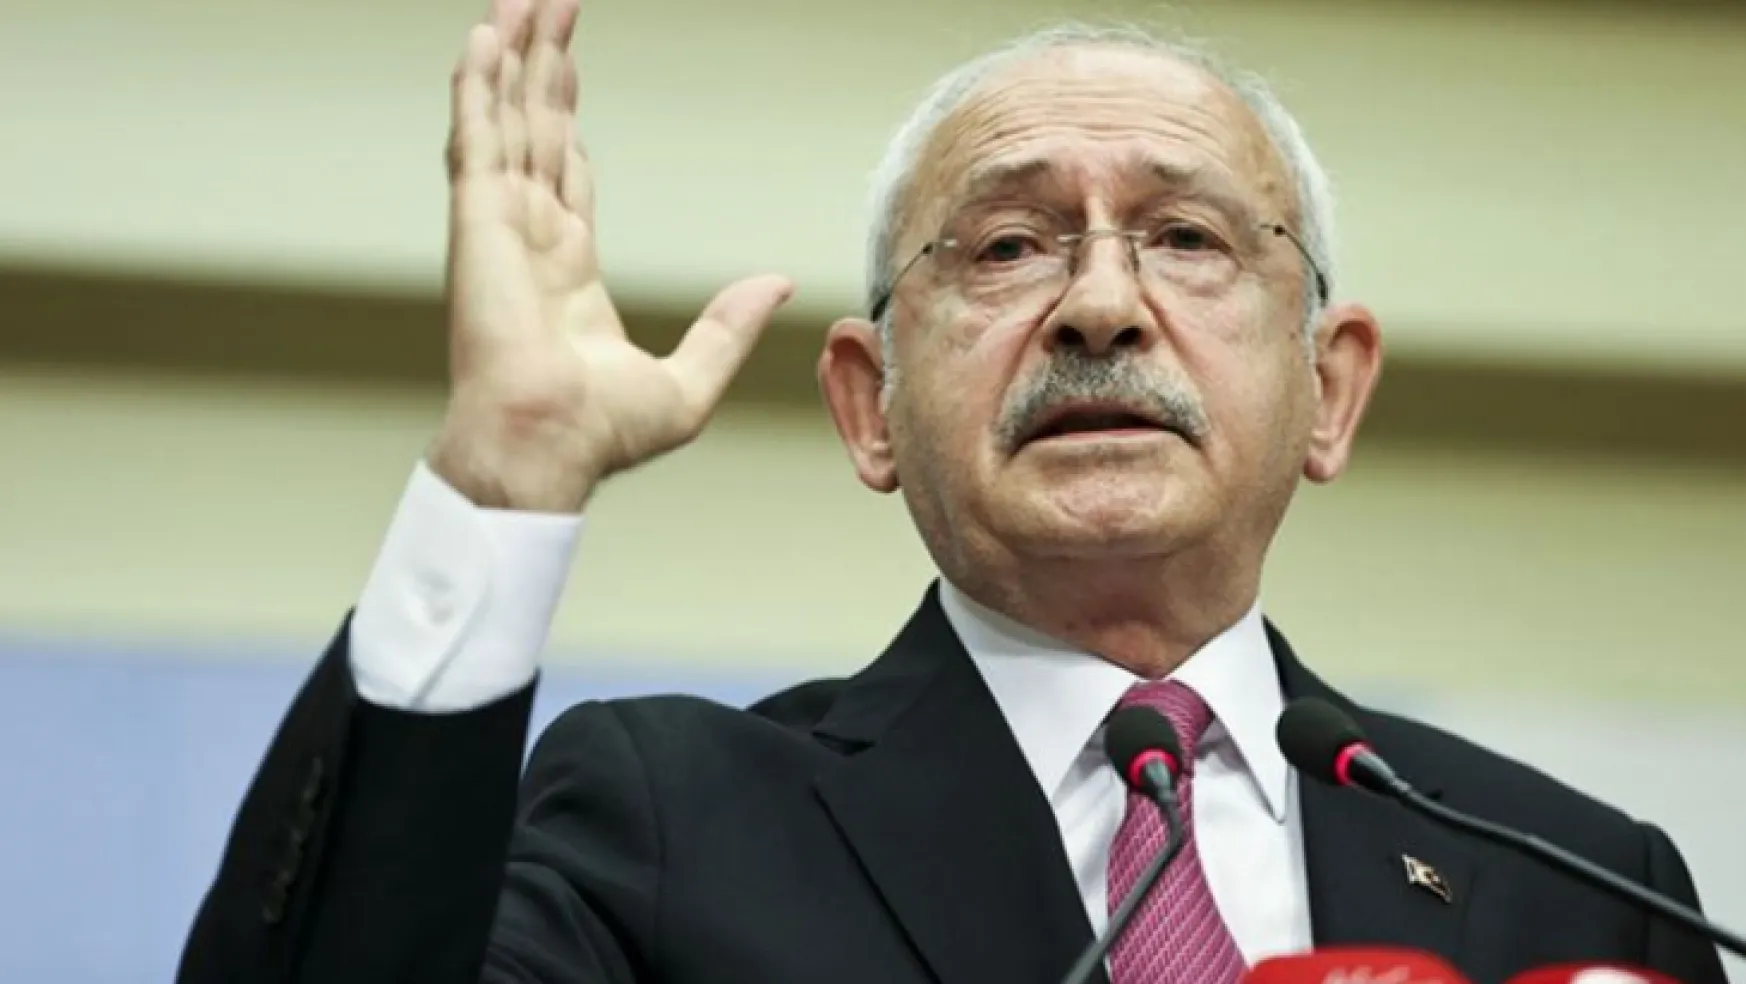 Kılıçdaroğlu: İktidar olursak Suriye'de meşru hükümetle protokol yapılacak